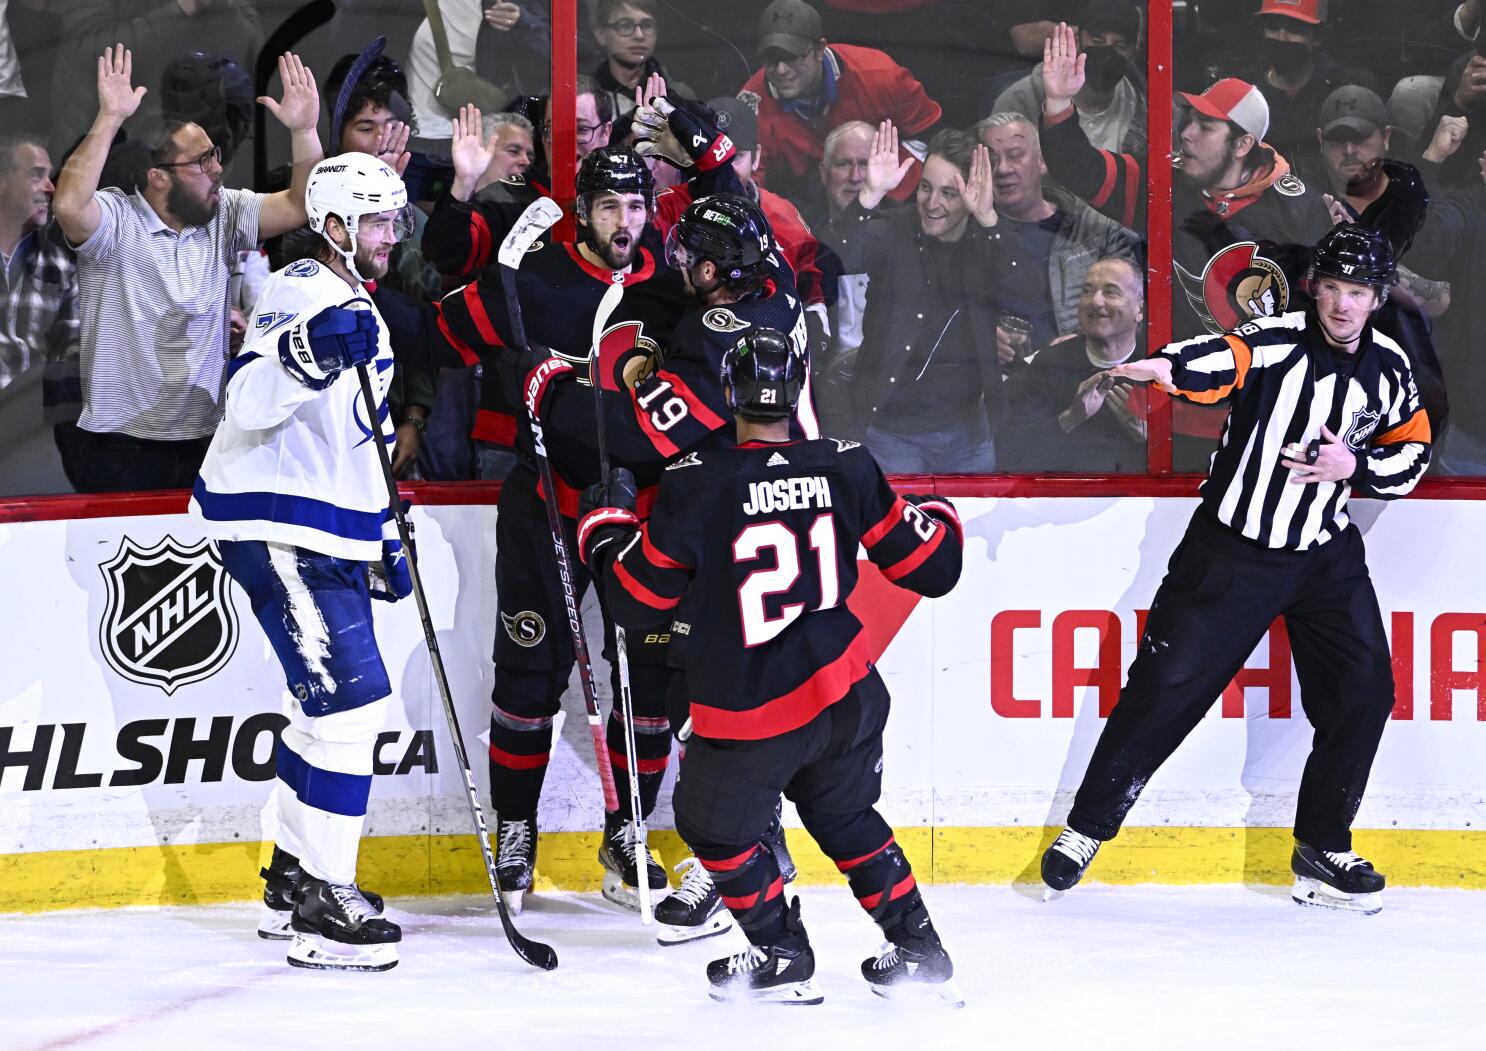 Claude Giroux scores on OT breakaway, Ottawa Senators beat Los